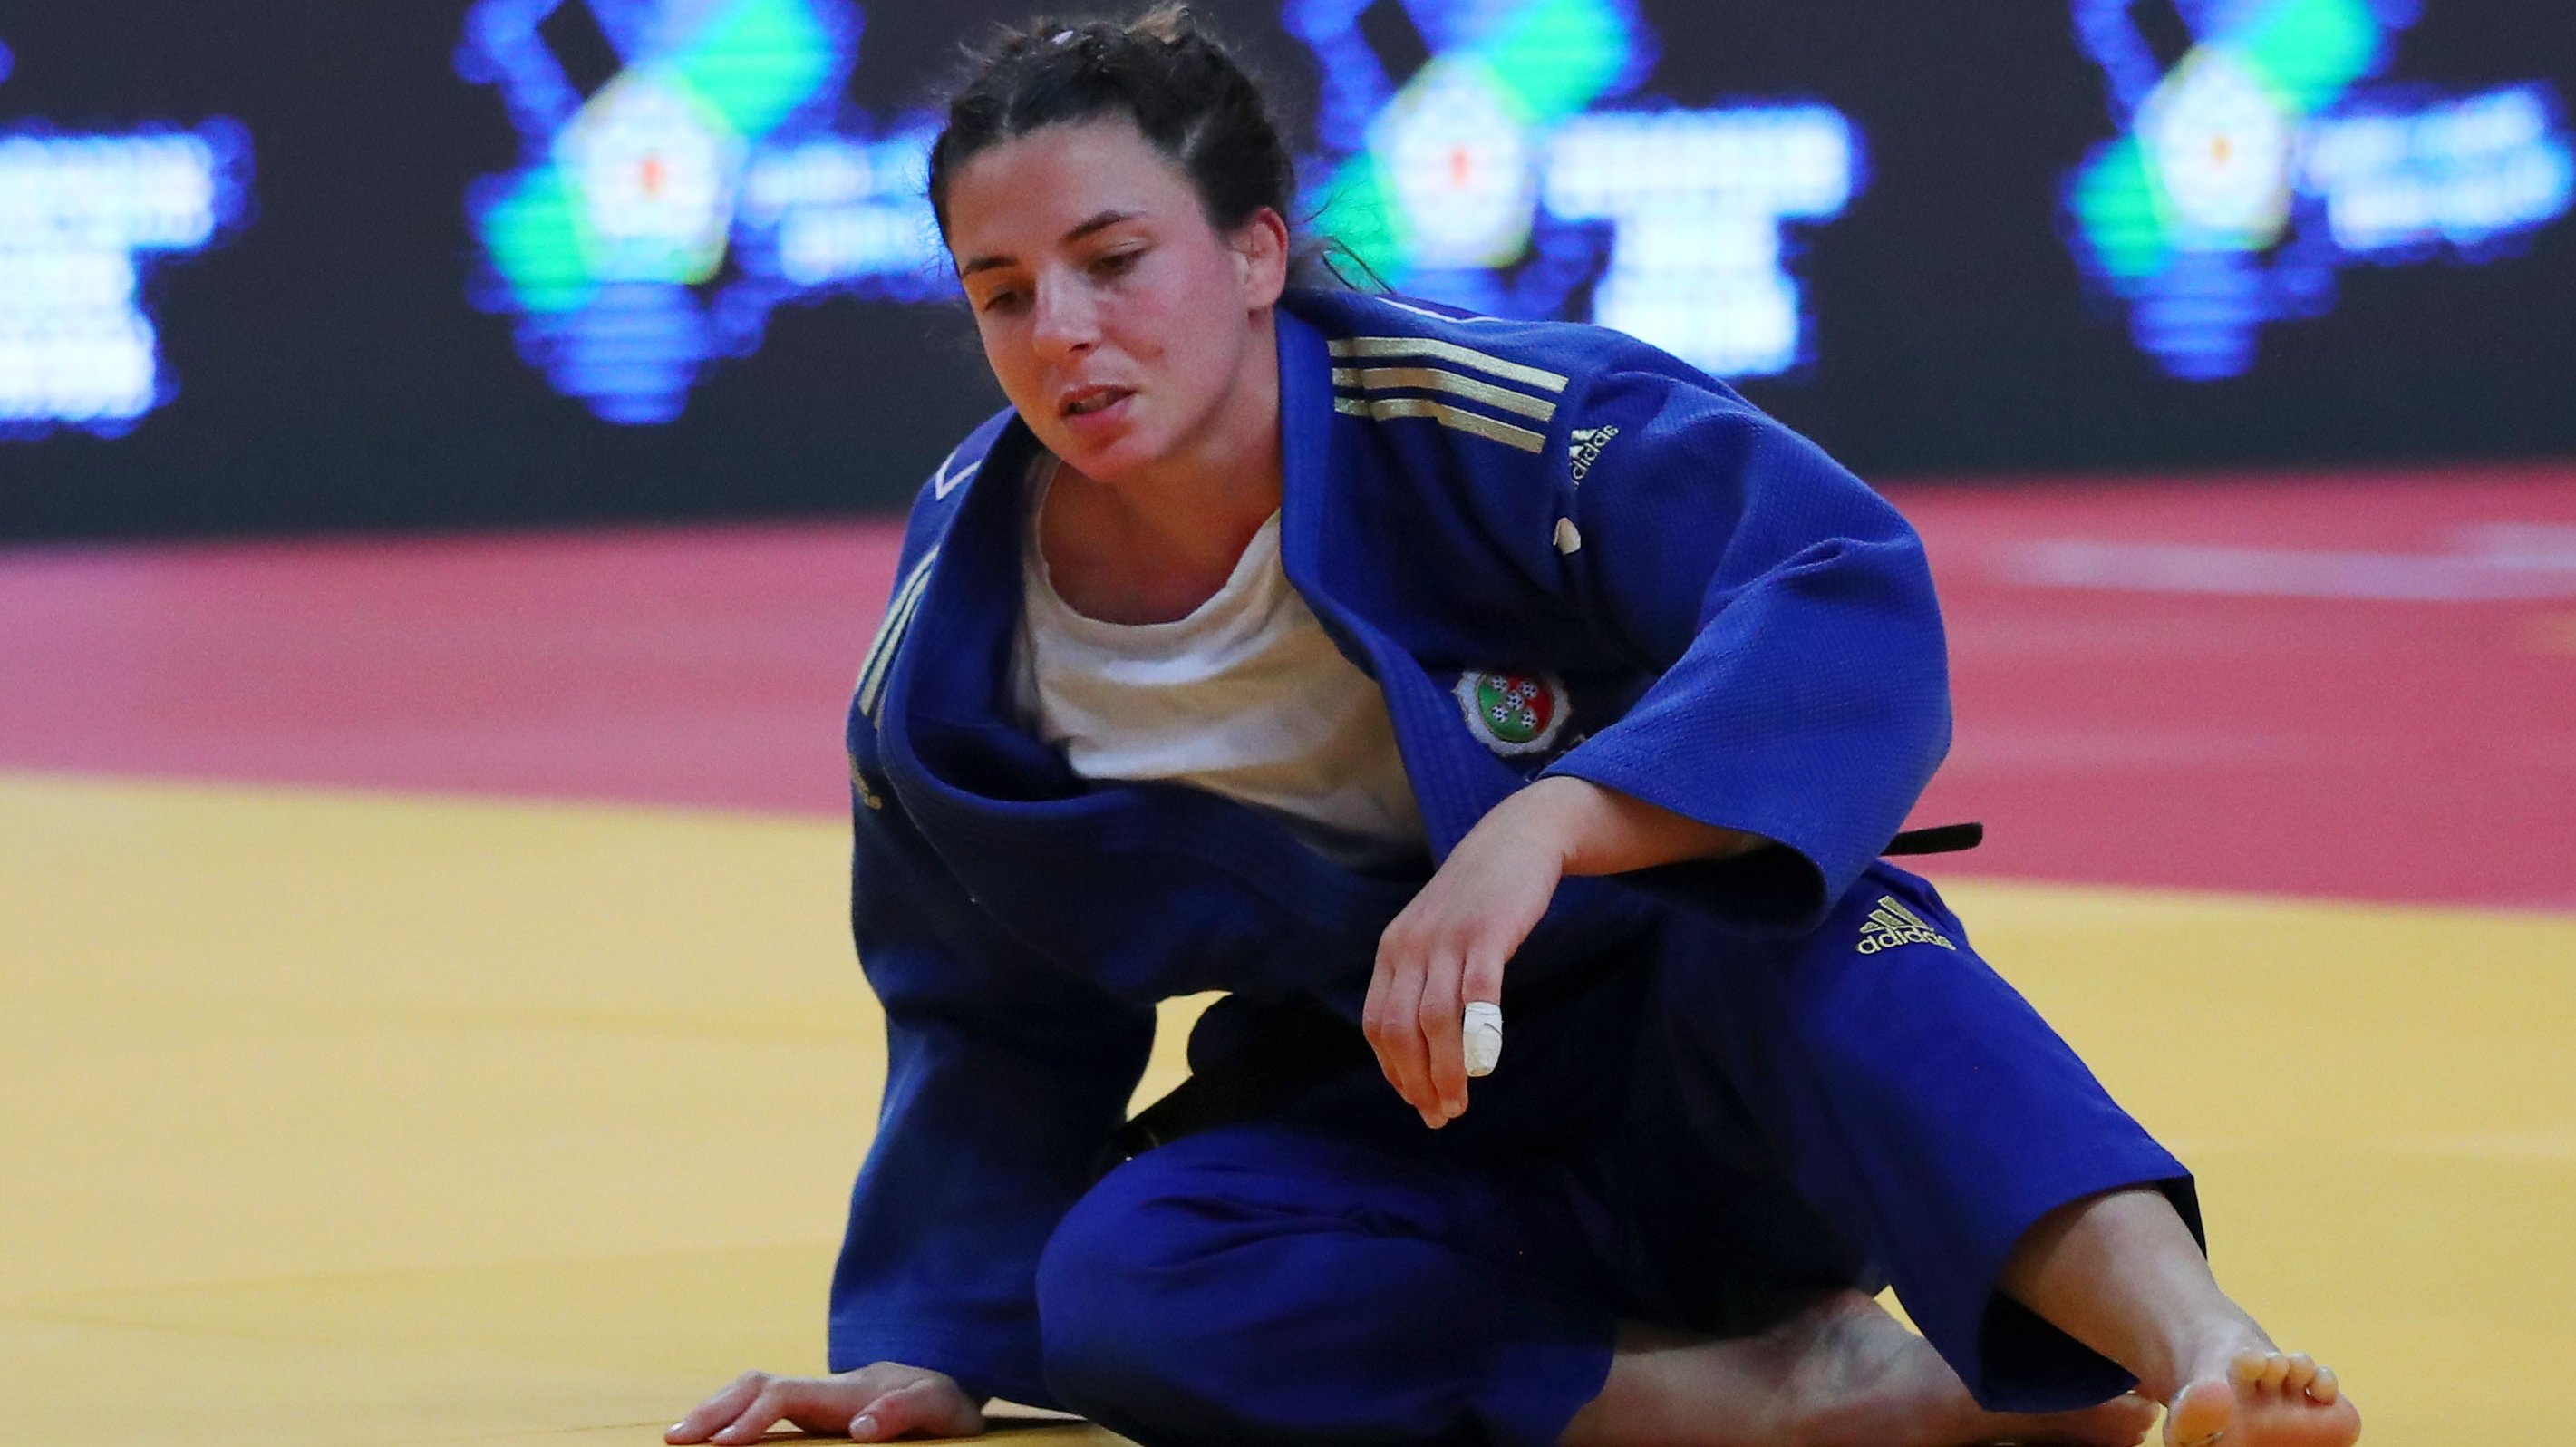 Bárbara Timo bateu no golden score a campeã europeia Sub-23 e conseguiu mais uma medalha por Portugal depois da prata nos Mundiais